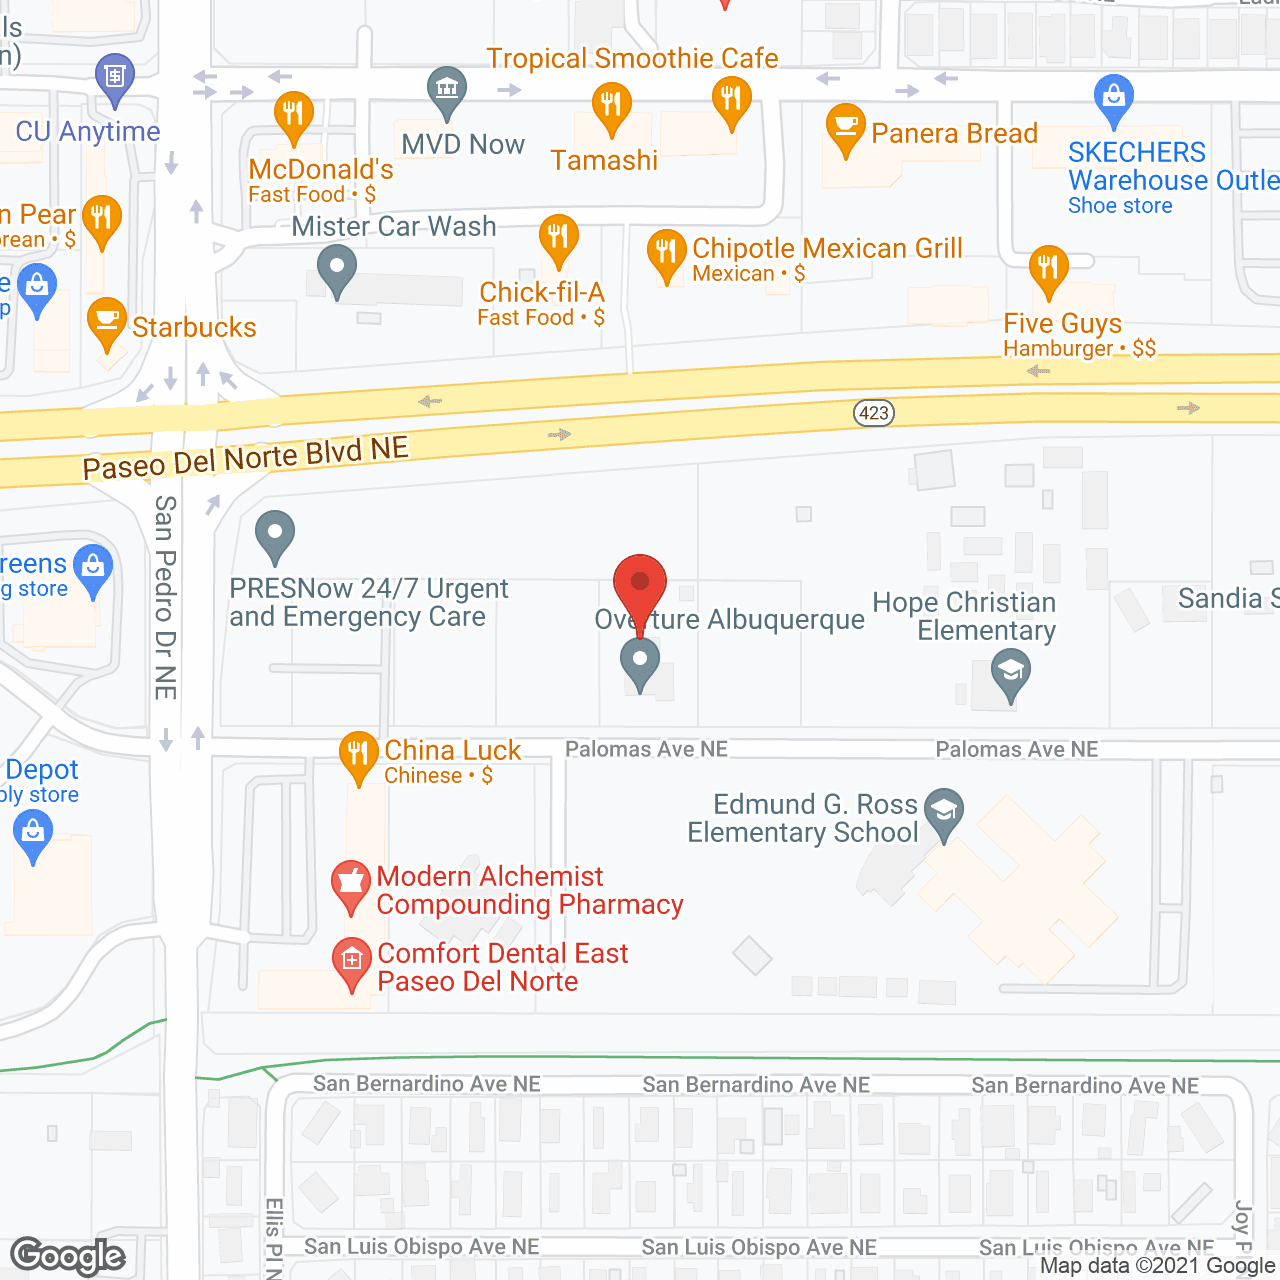 Overture Albuquerque 55+ Apartment Homes in google map